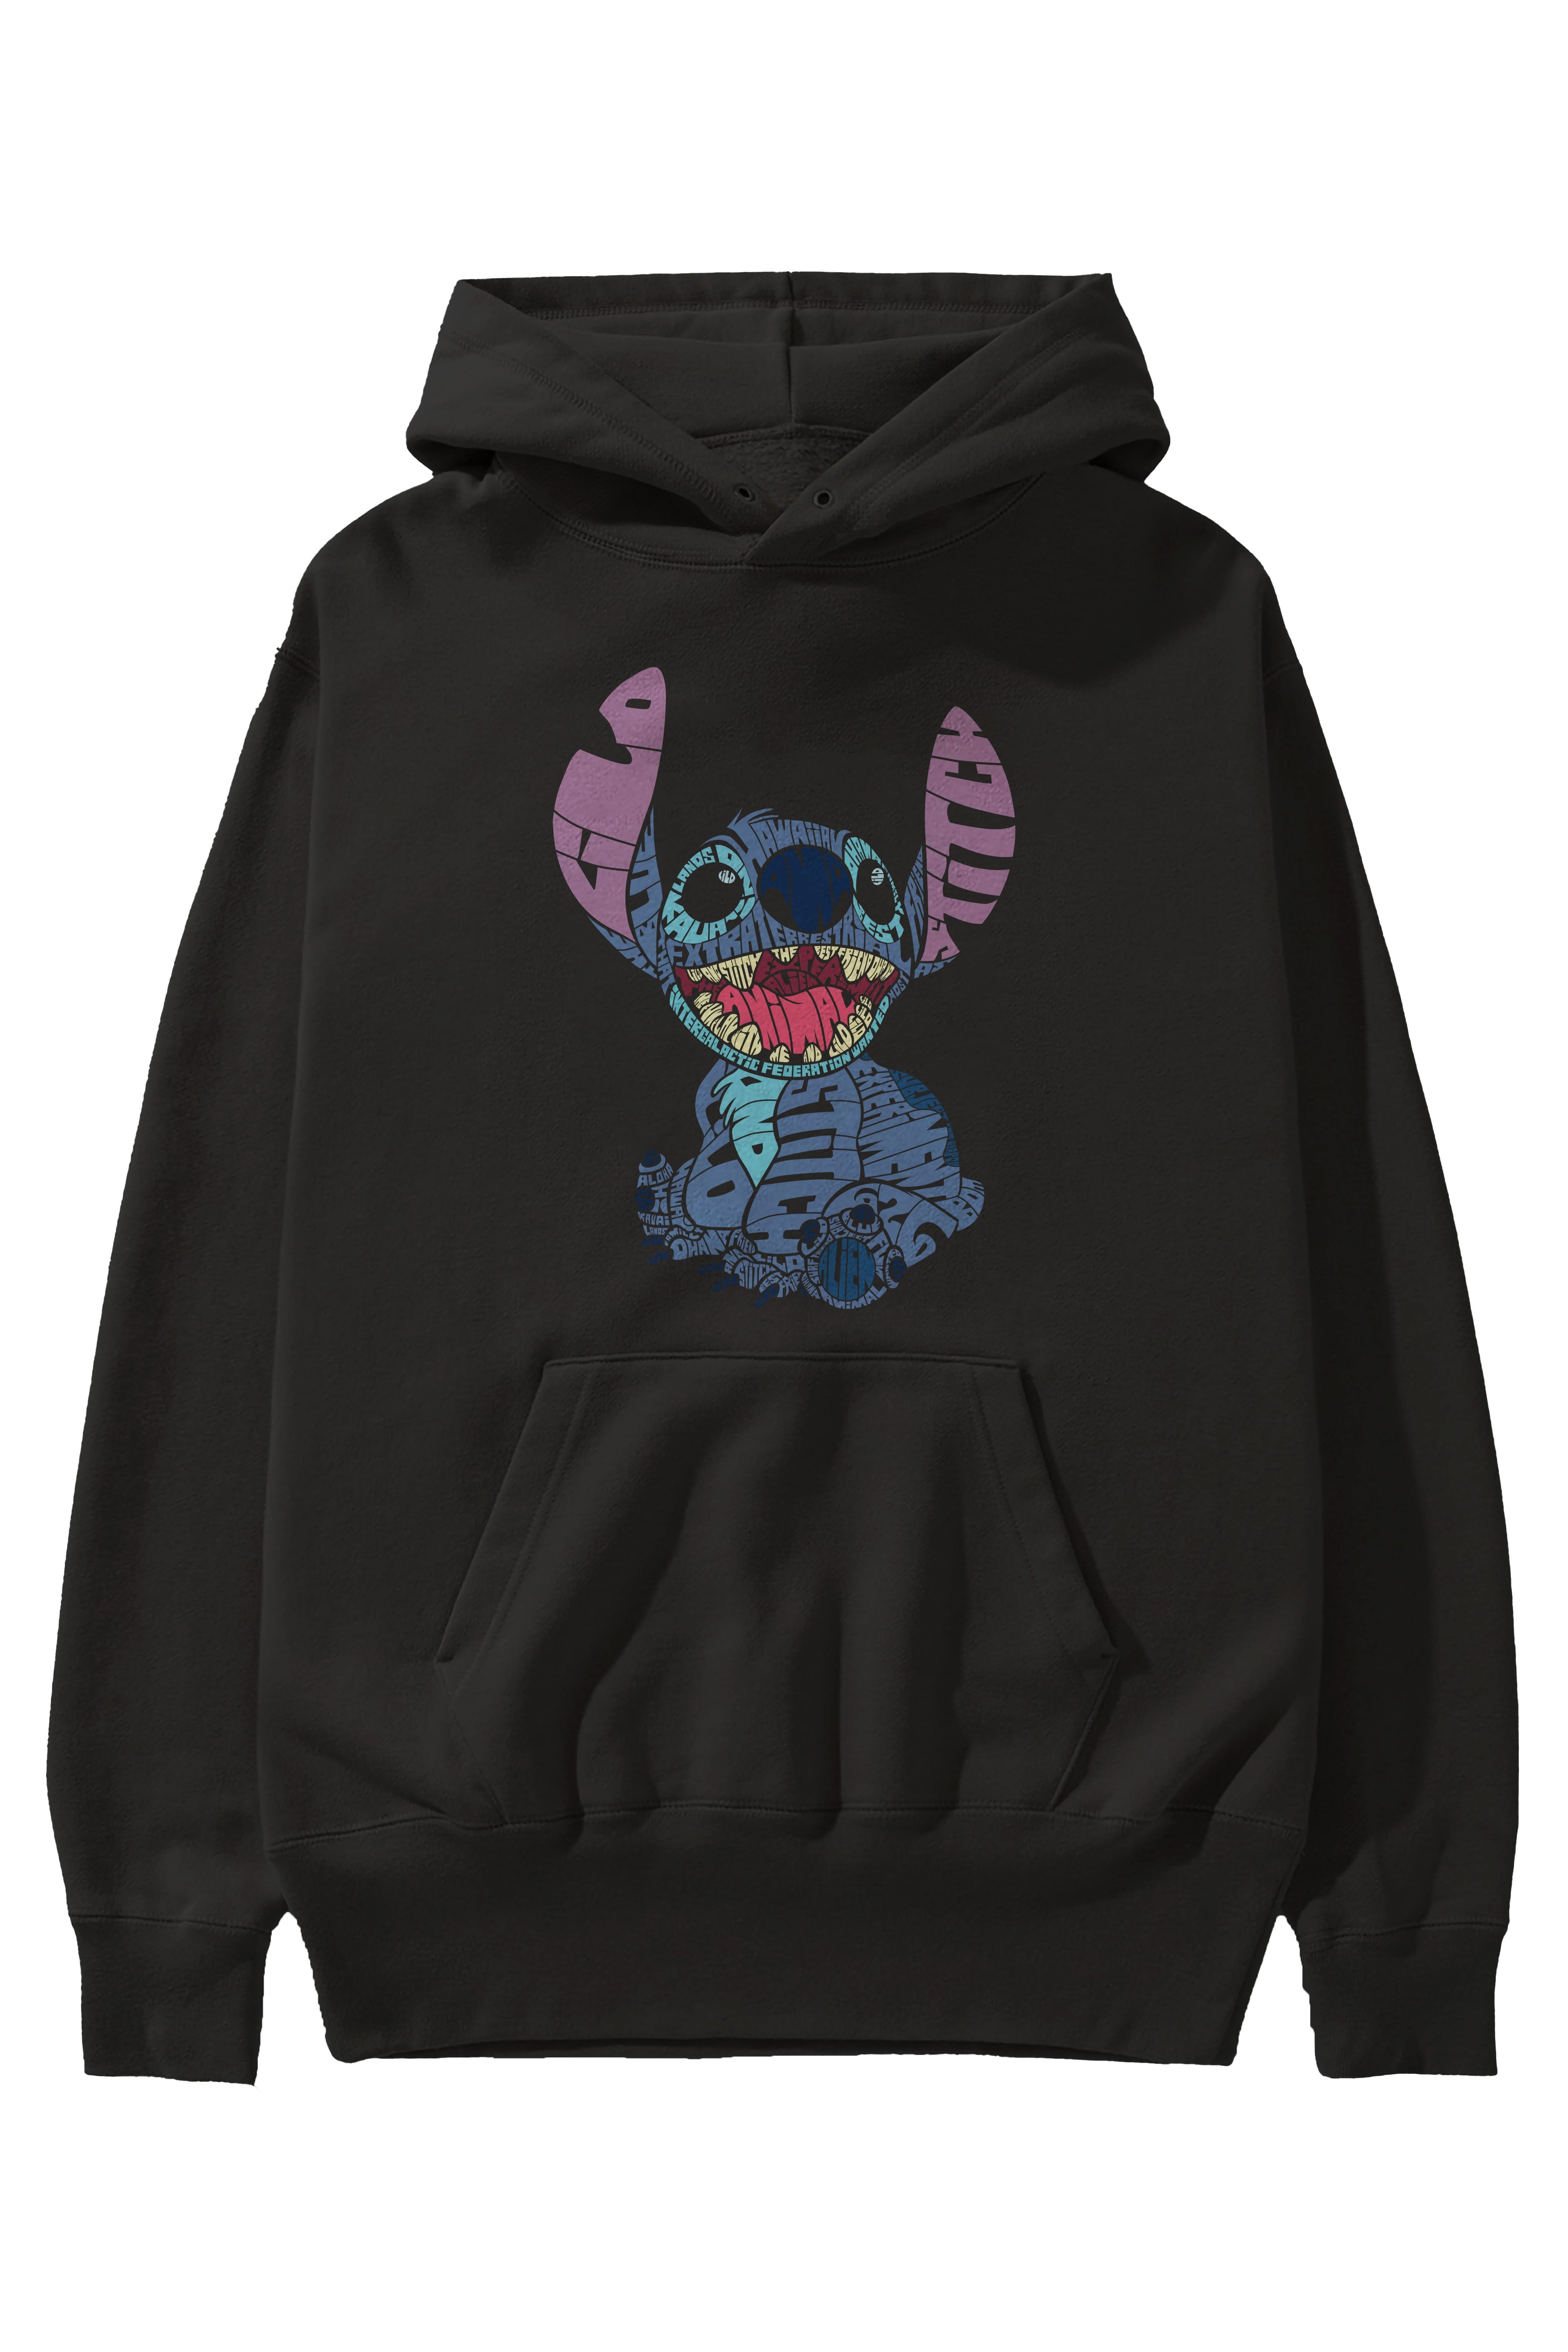 Stitch Ön Baskılı Hoodie Oversize Kapüşonlu Sweatshirt Erkek Kadın Unisex